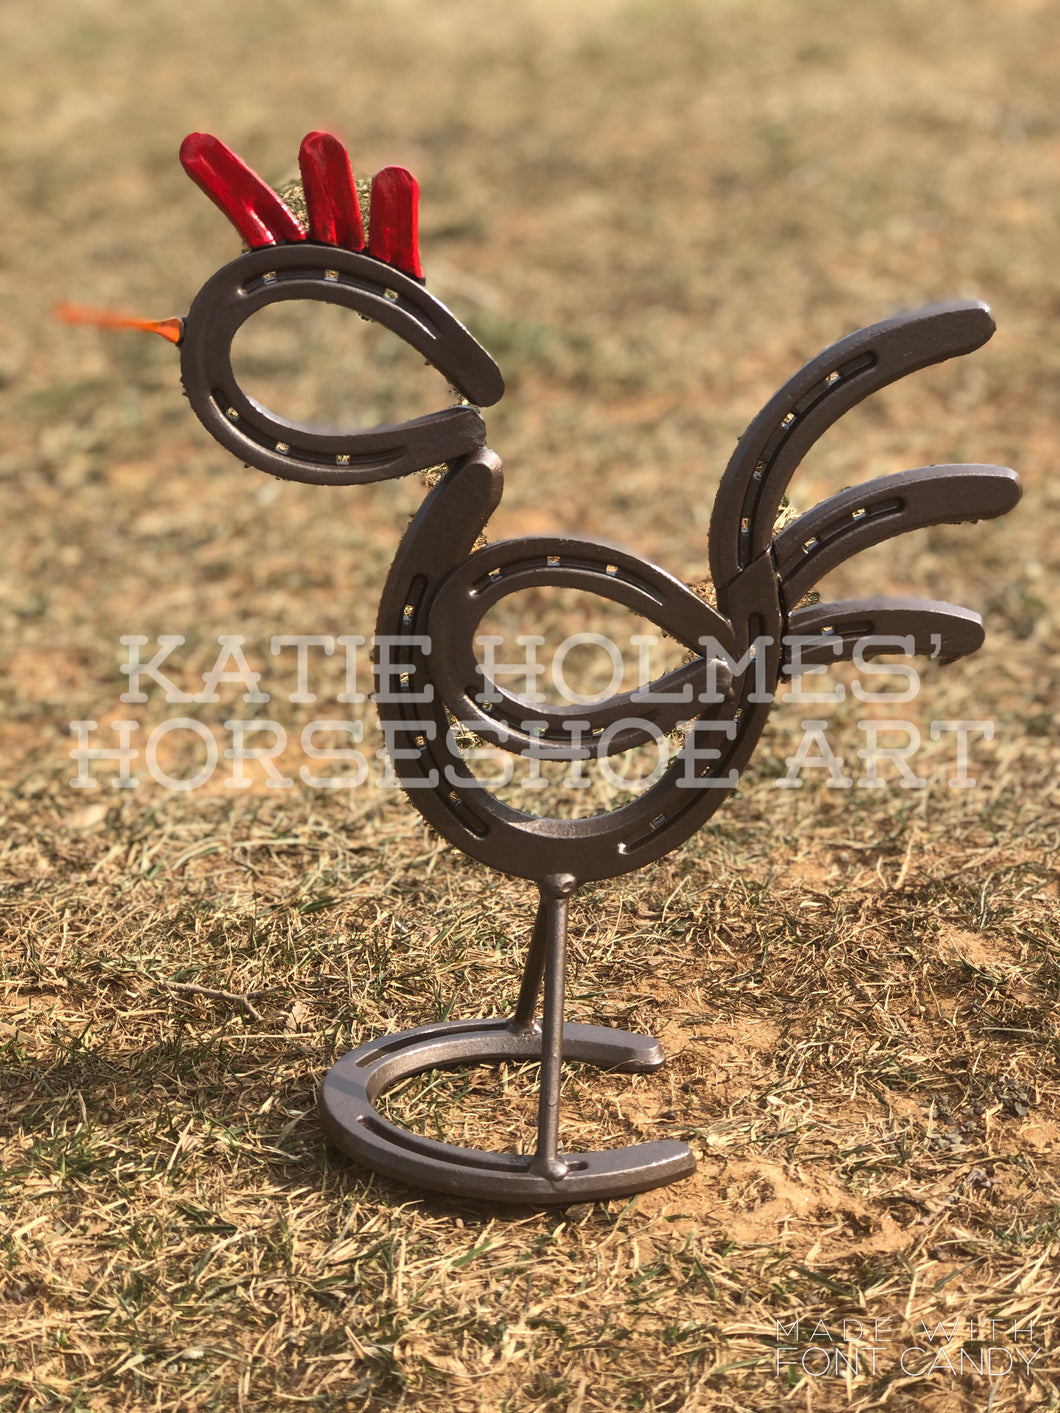 Horseshoe Chicken – Katie Holmes' Horseshoe Art, Horseshoes